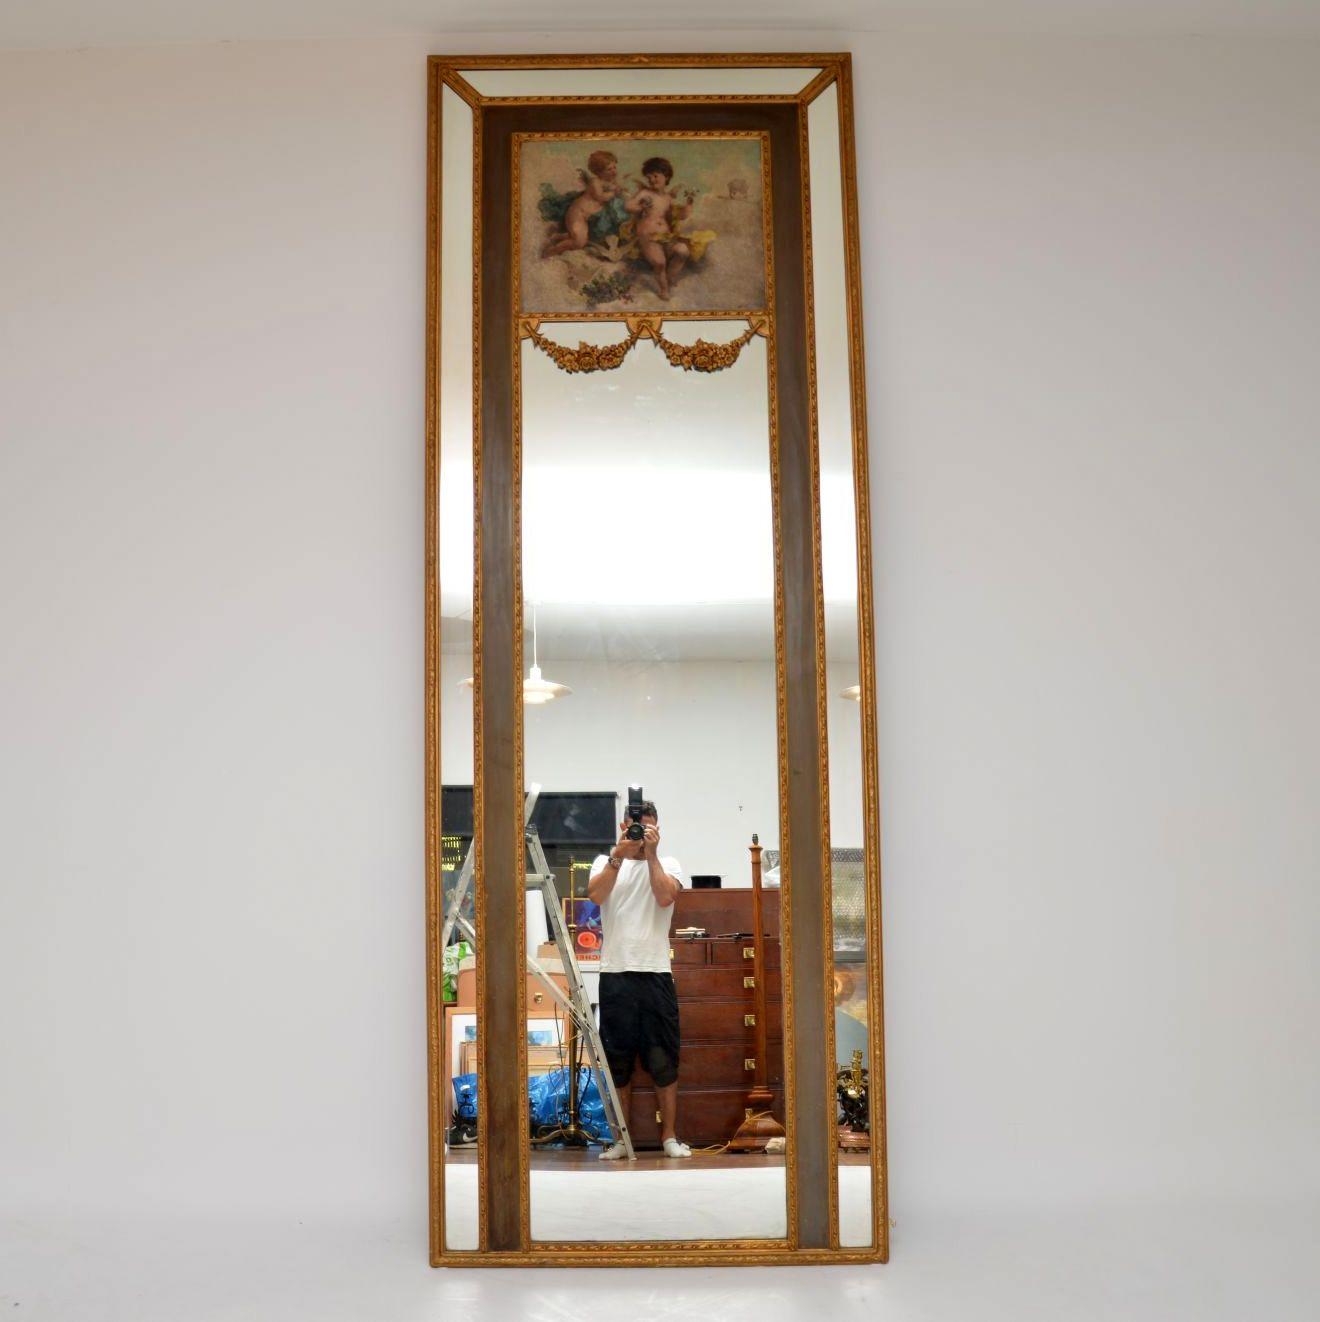 Grand miroir décoratif antique en bois doré avec une peinture à l'huile signée sur la section supérieure et d'autres caractéristiques merveilleuses.

Il est très difficile de montrer une bonne image de ce miroir et de rendre compte de ses grandes